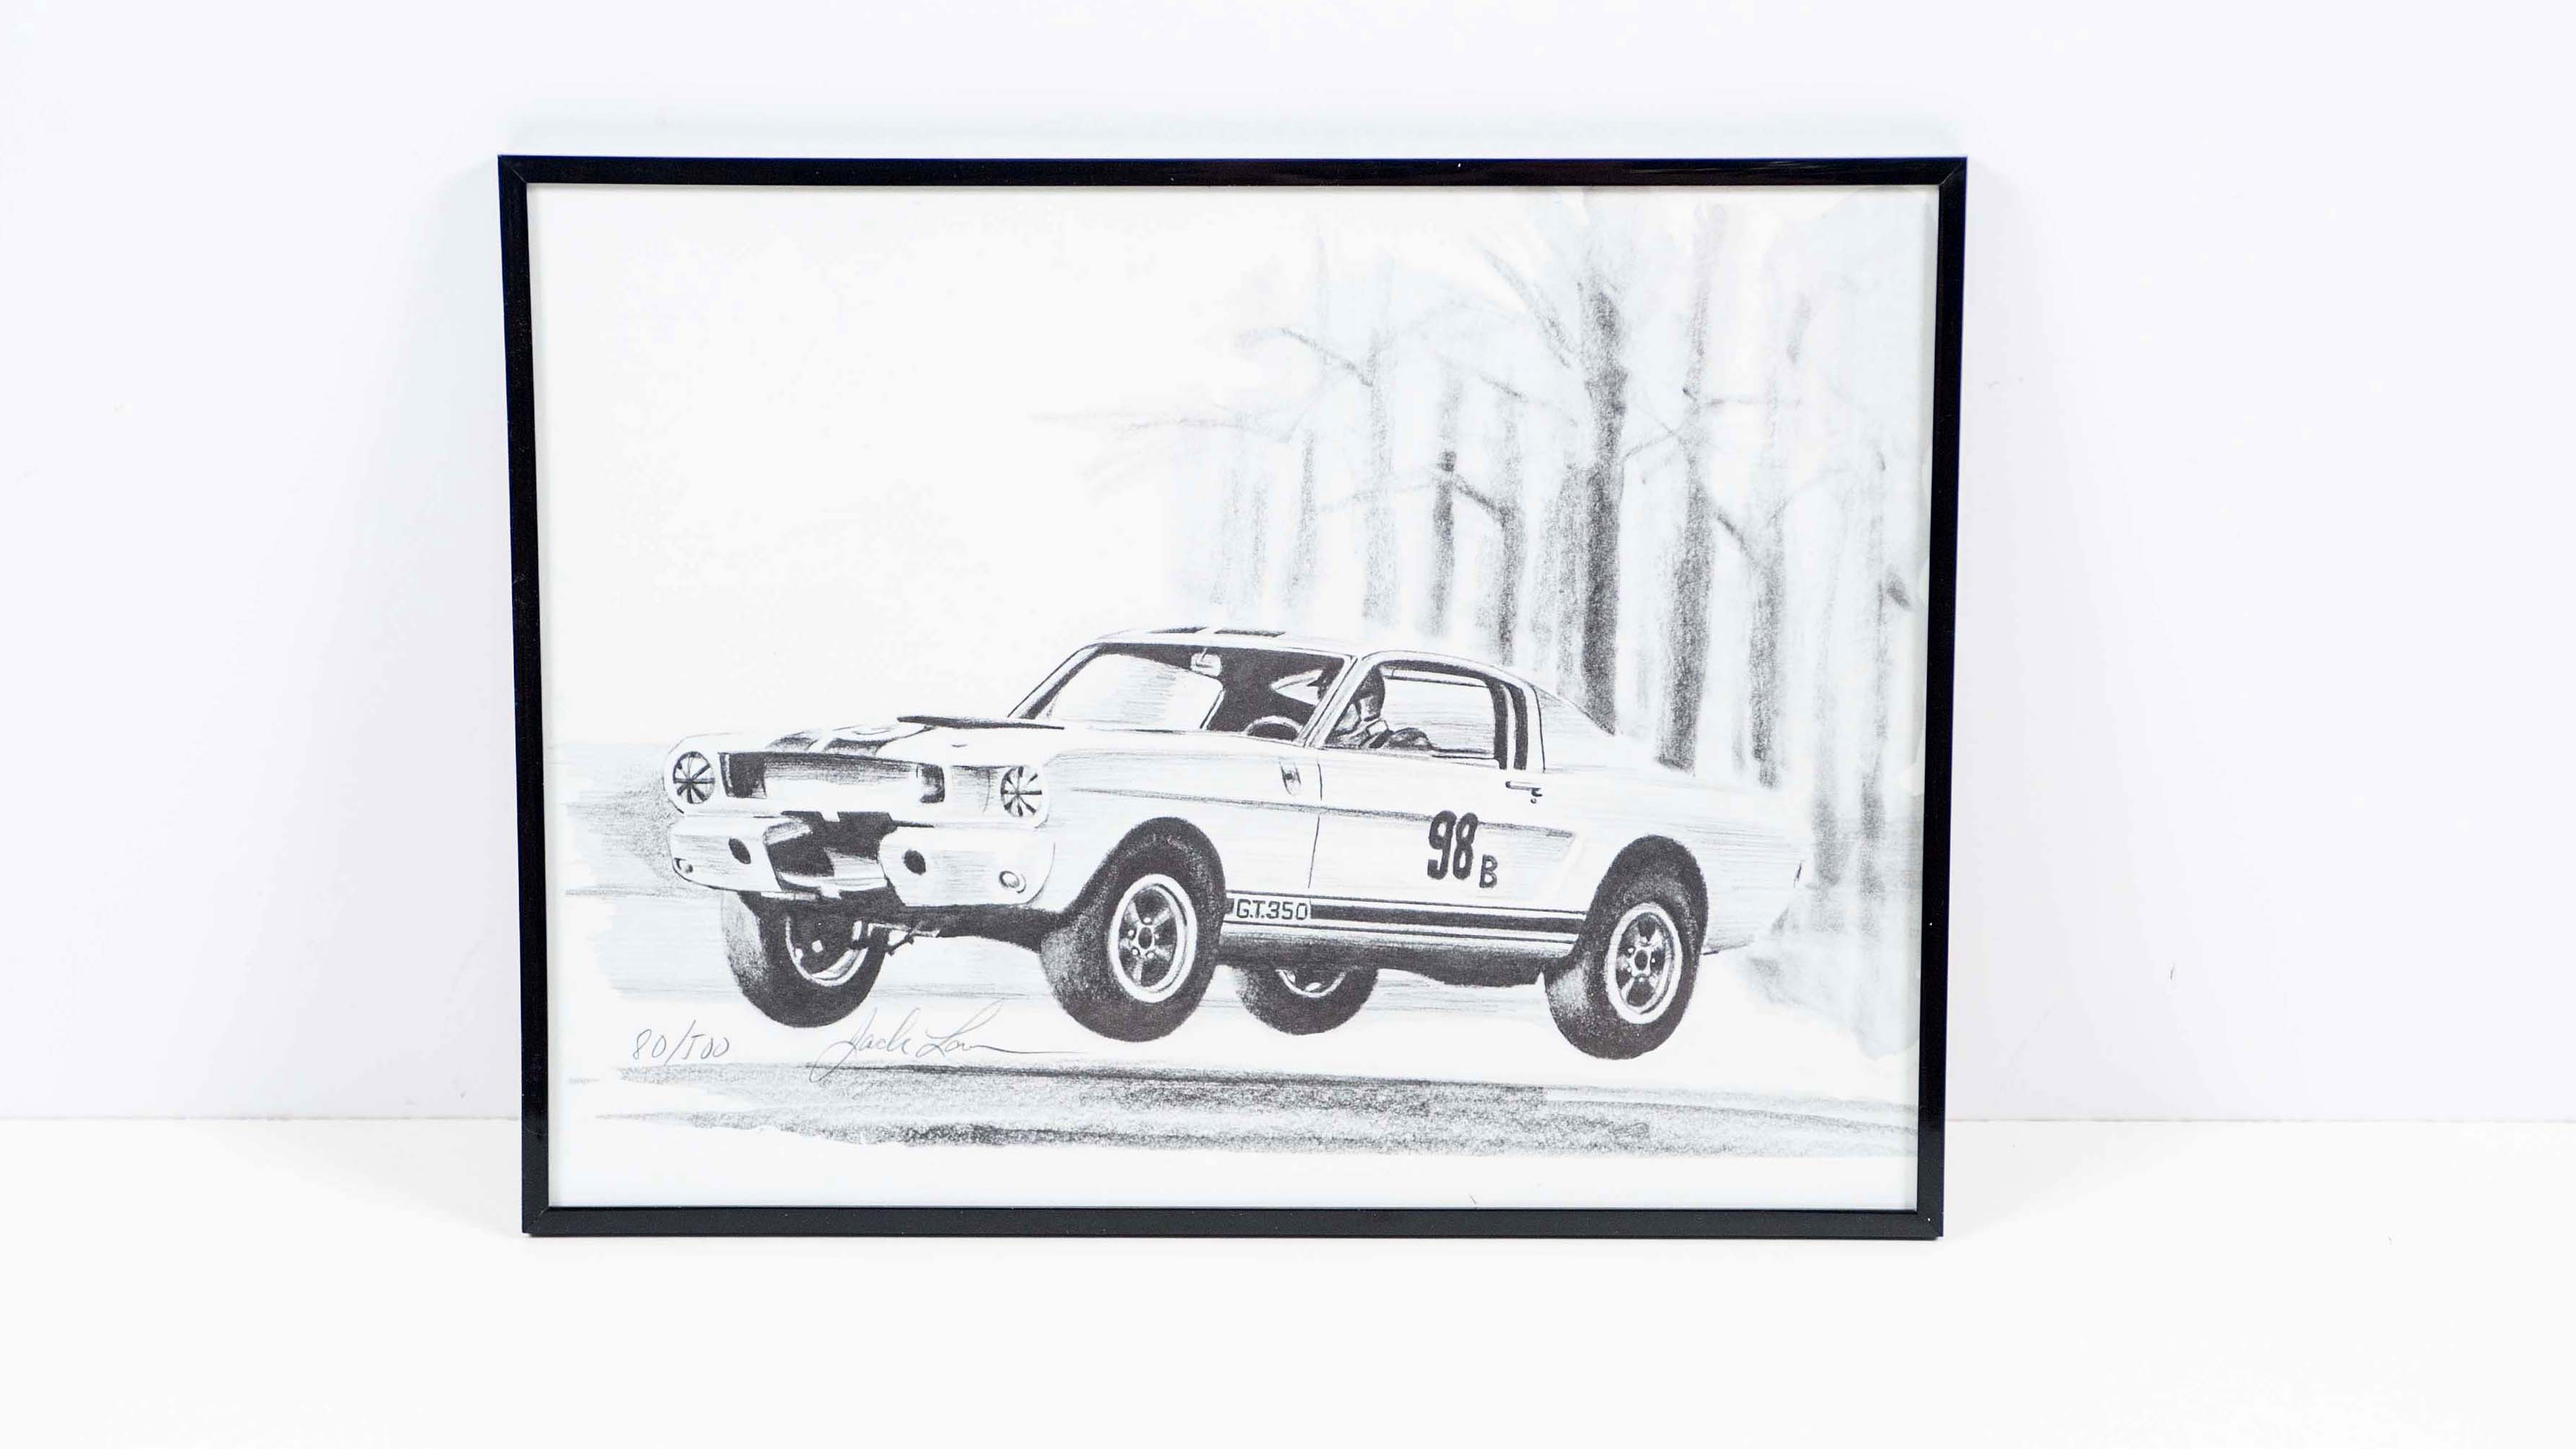 1966 Ford Fairlane GT/GTA Model Kit Auction